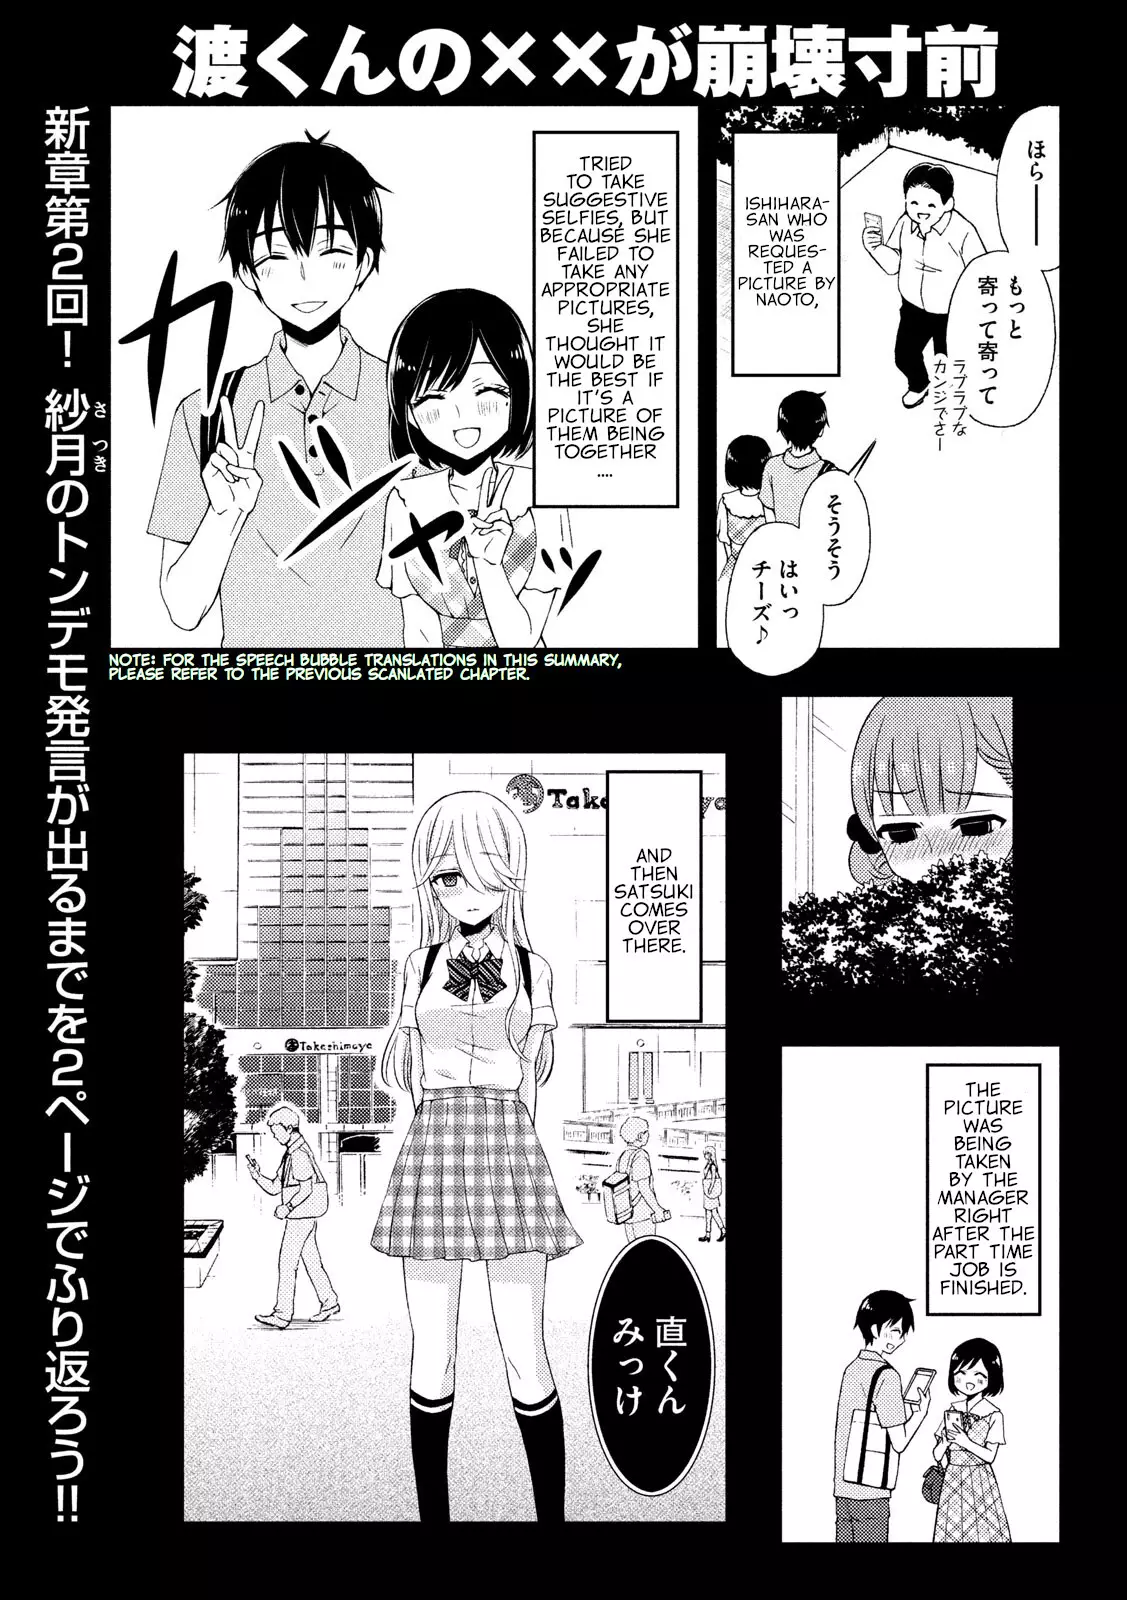 Watari-Kun No Xx Ga Houkai Sunzen - 49 page 1-58dc72ff